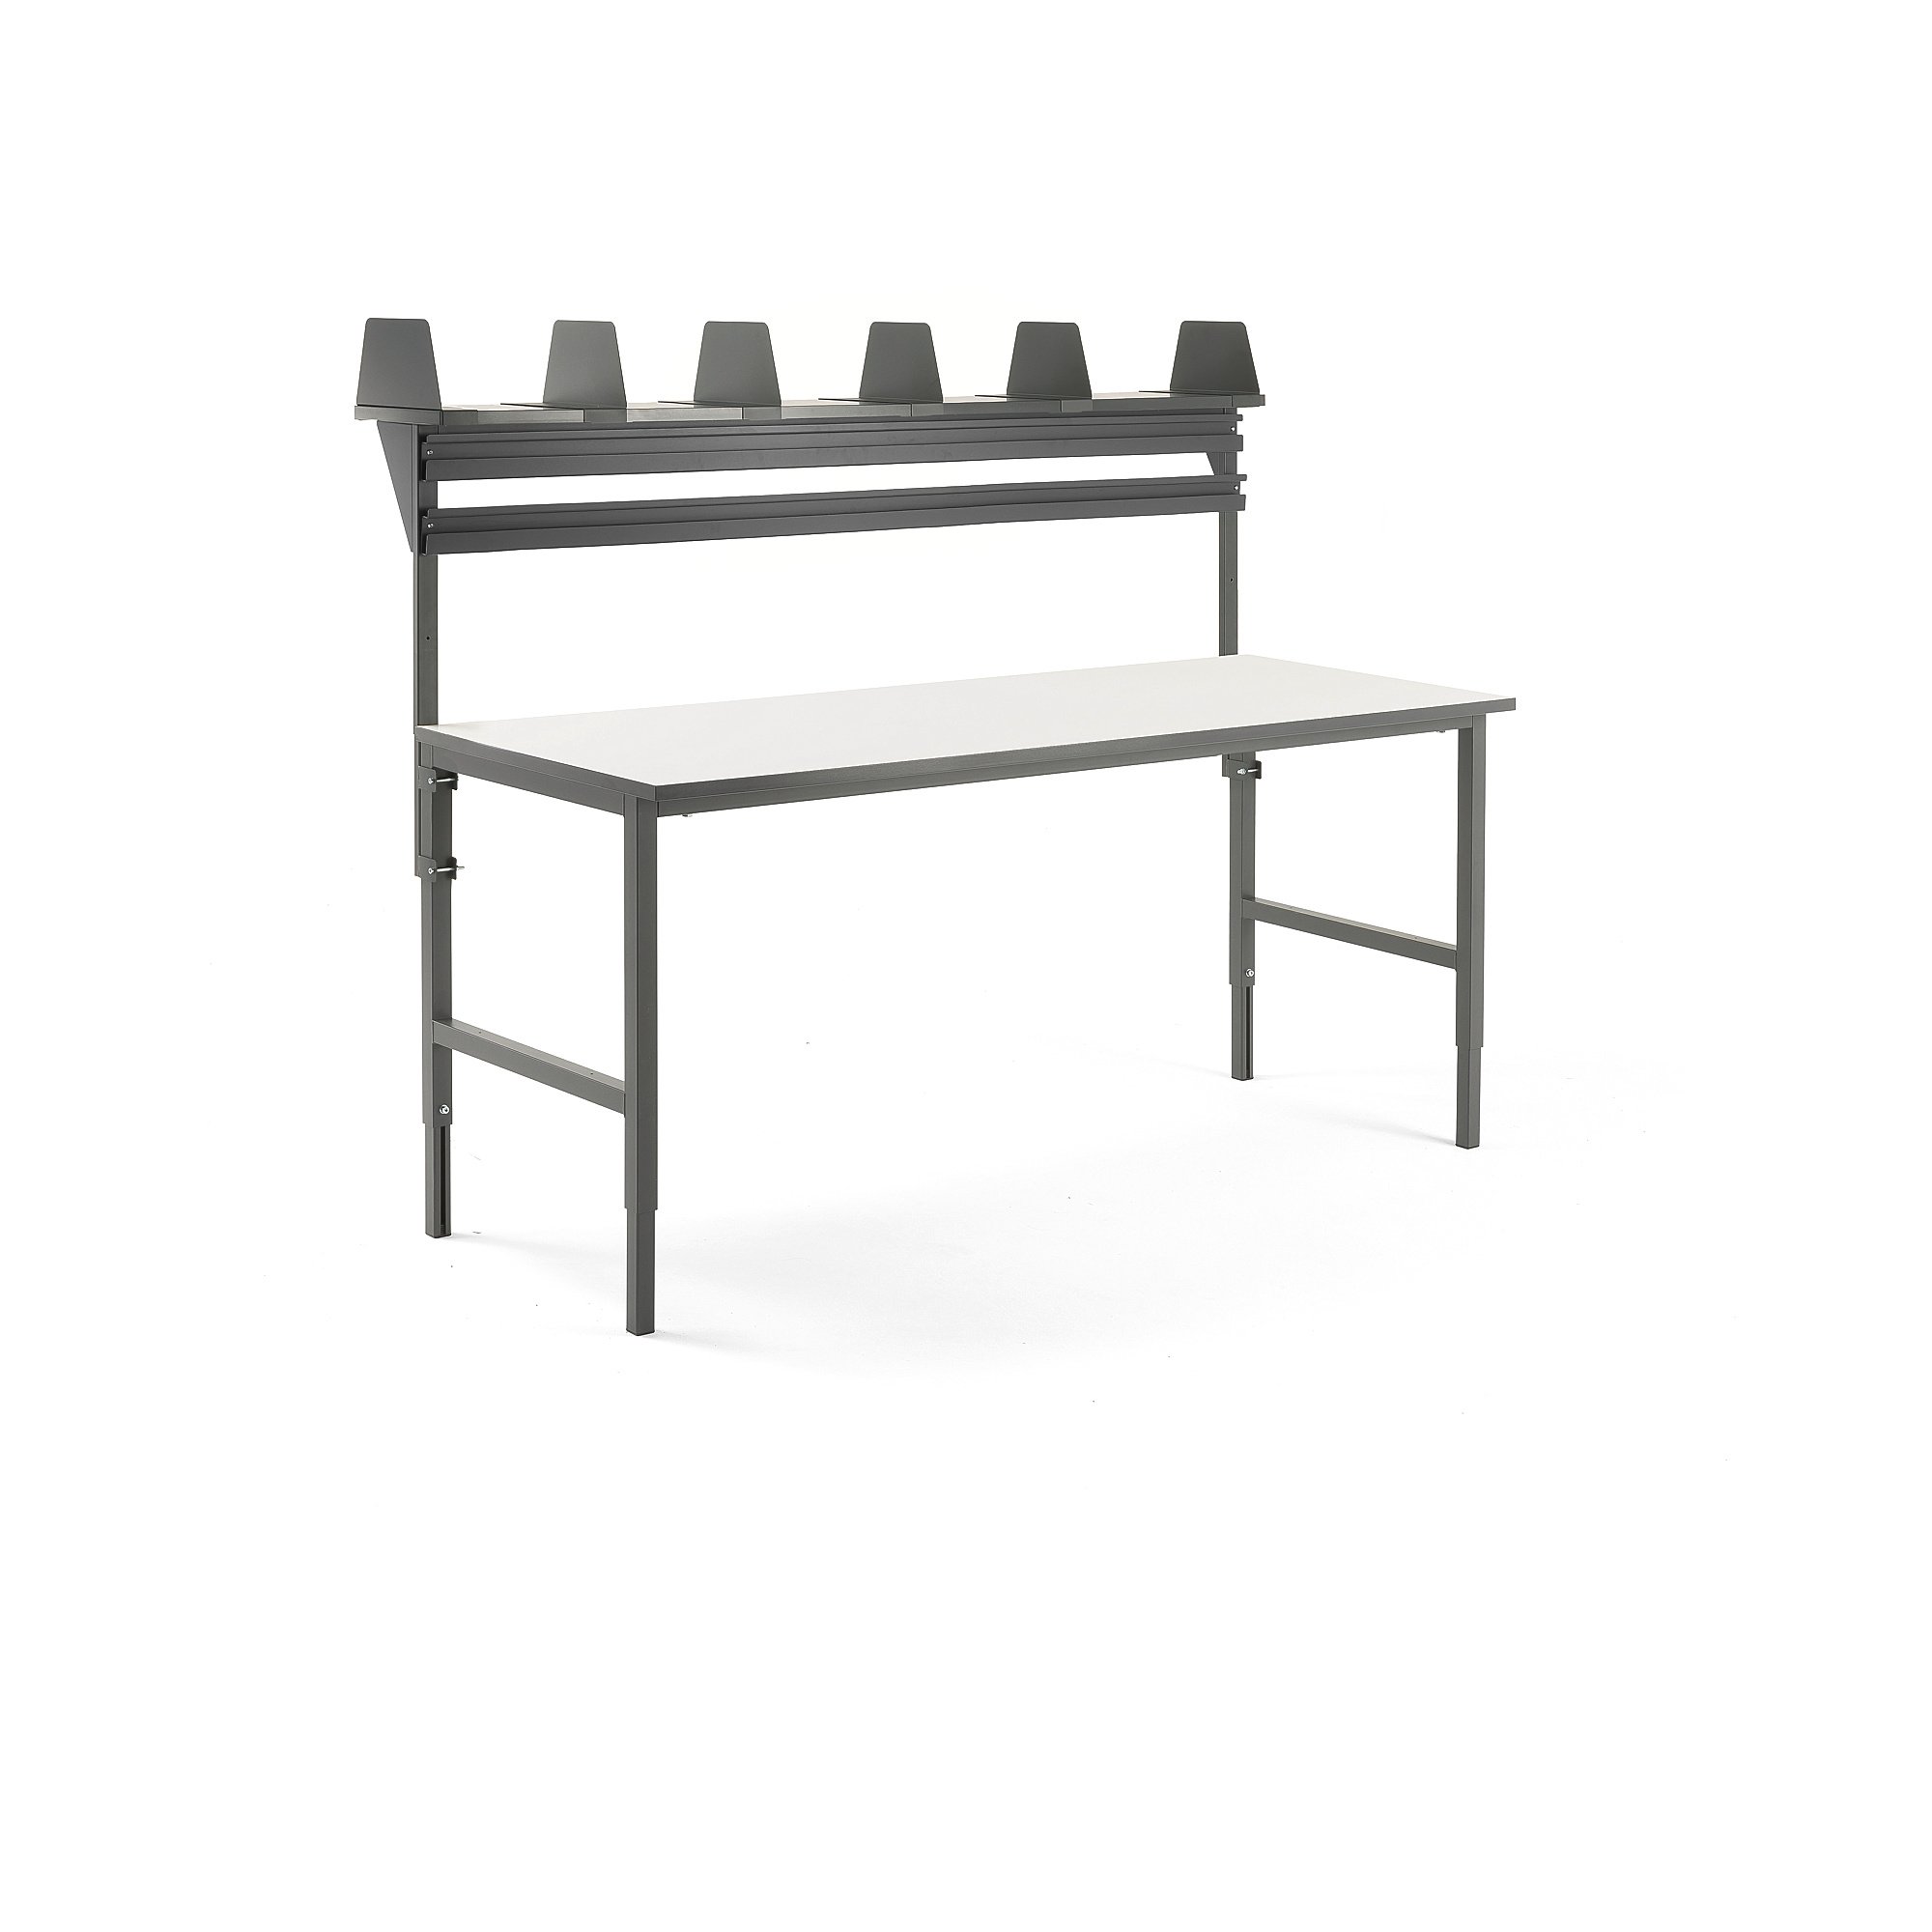 E-shop Dielenský stôl Cargo, 2000x750 mm, vrchná polica + 2 koľajnice